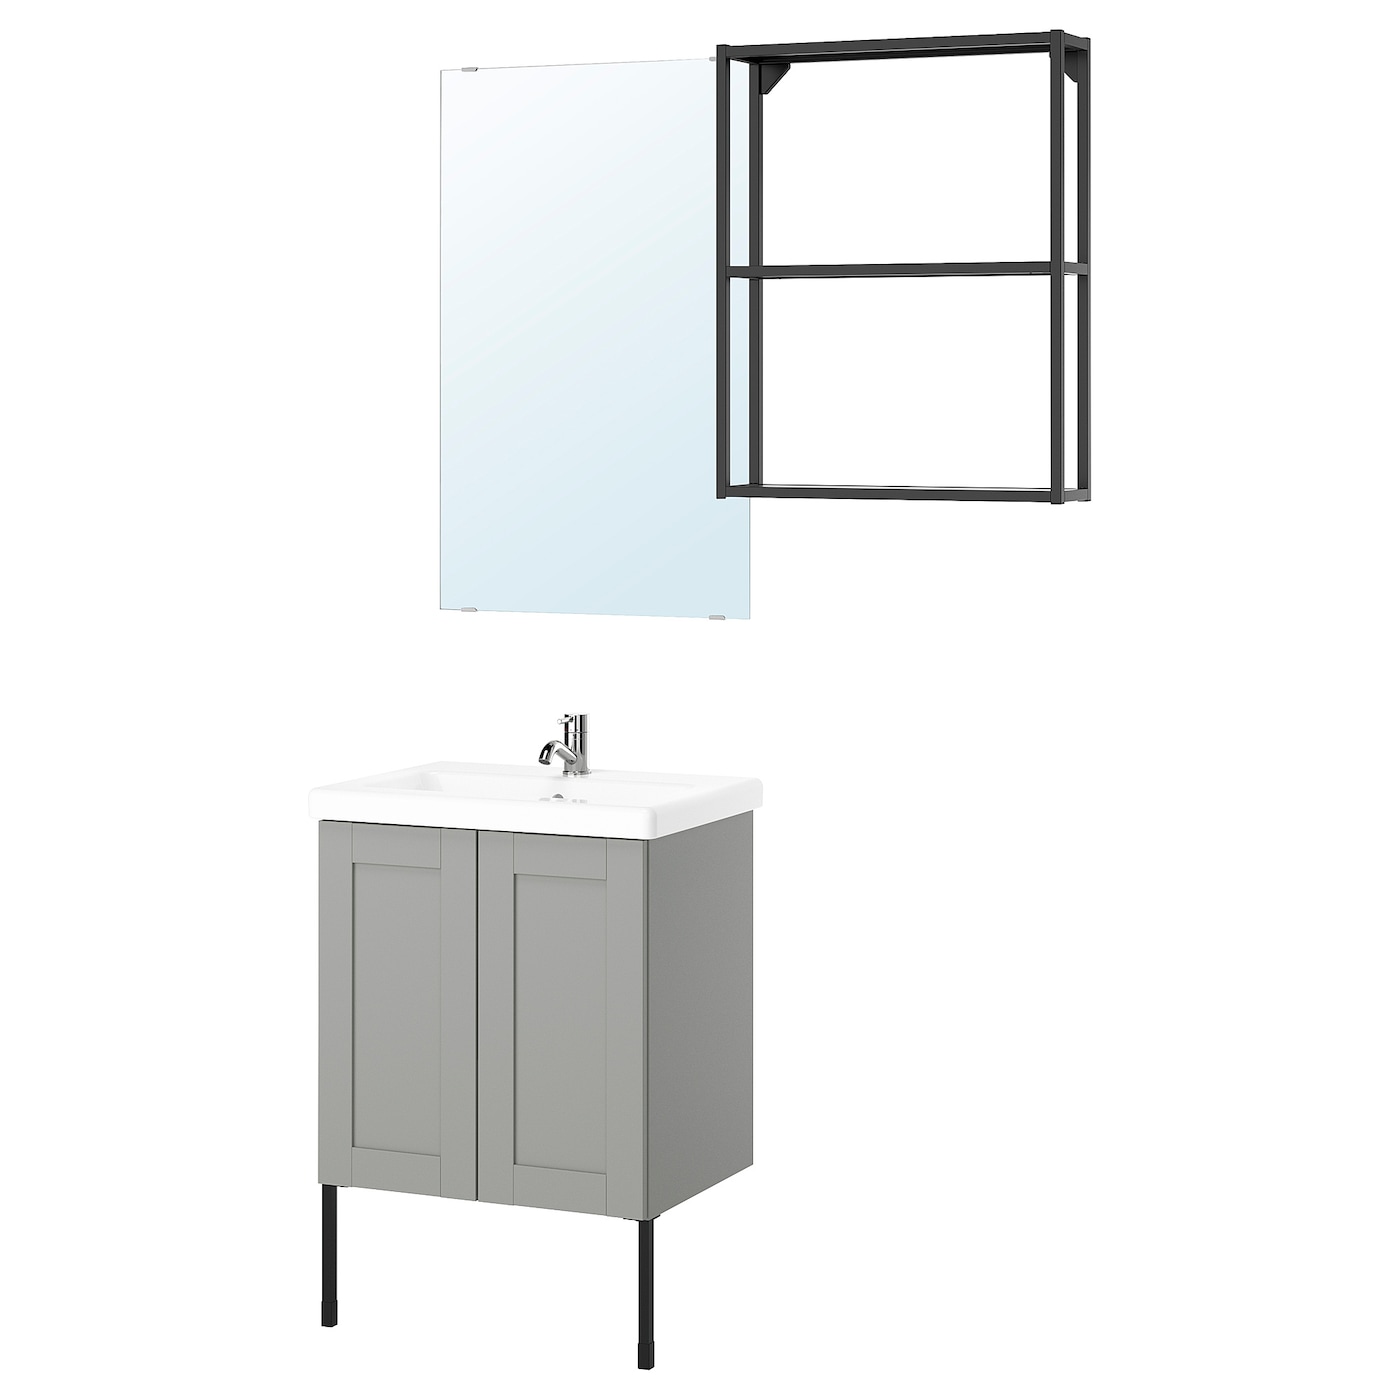 Комбинация для ванной - IKEA ENHET, 64х43х65 см, антрацит/серый, ЭНХЕТ ИКЕА